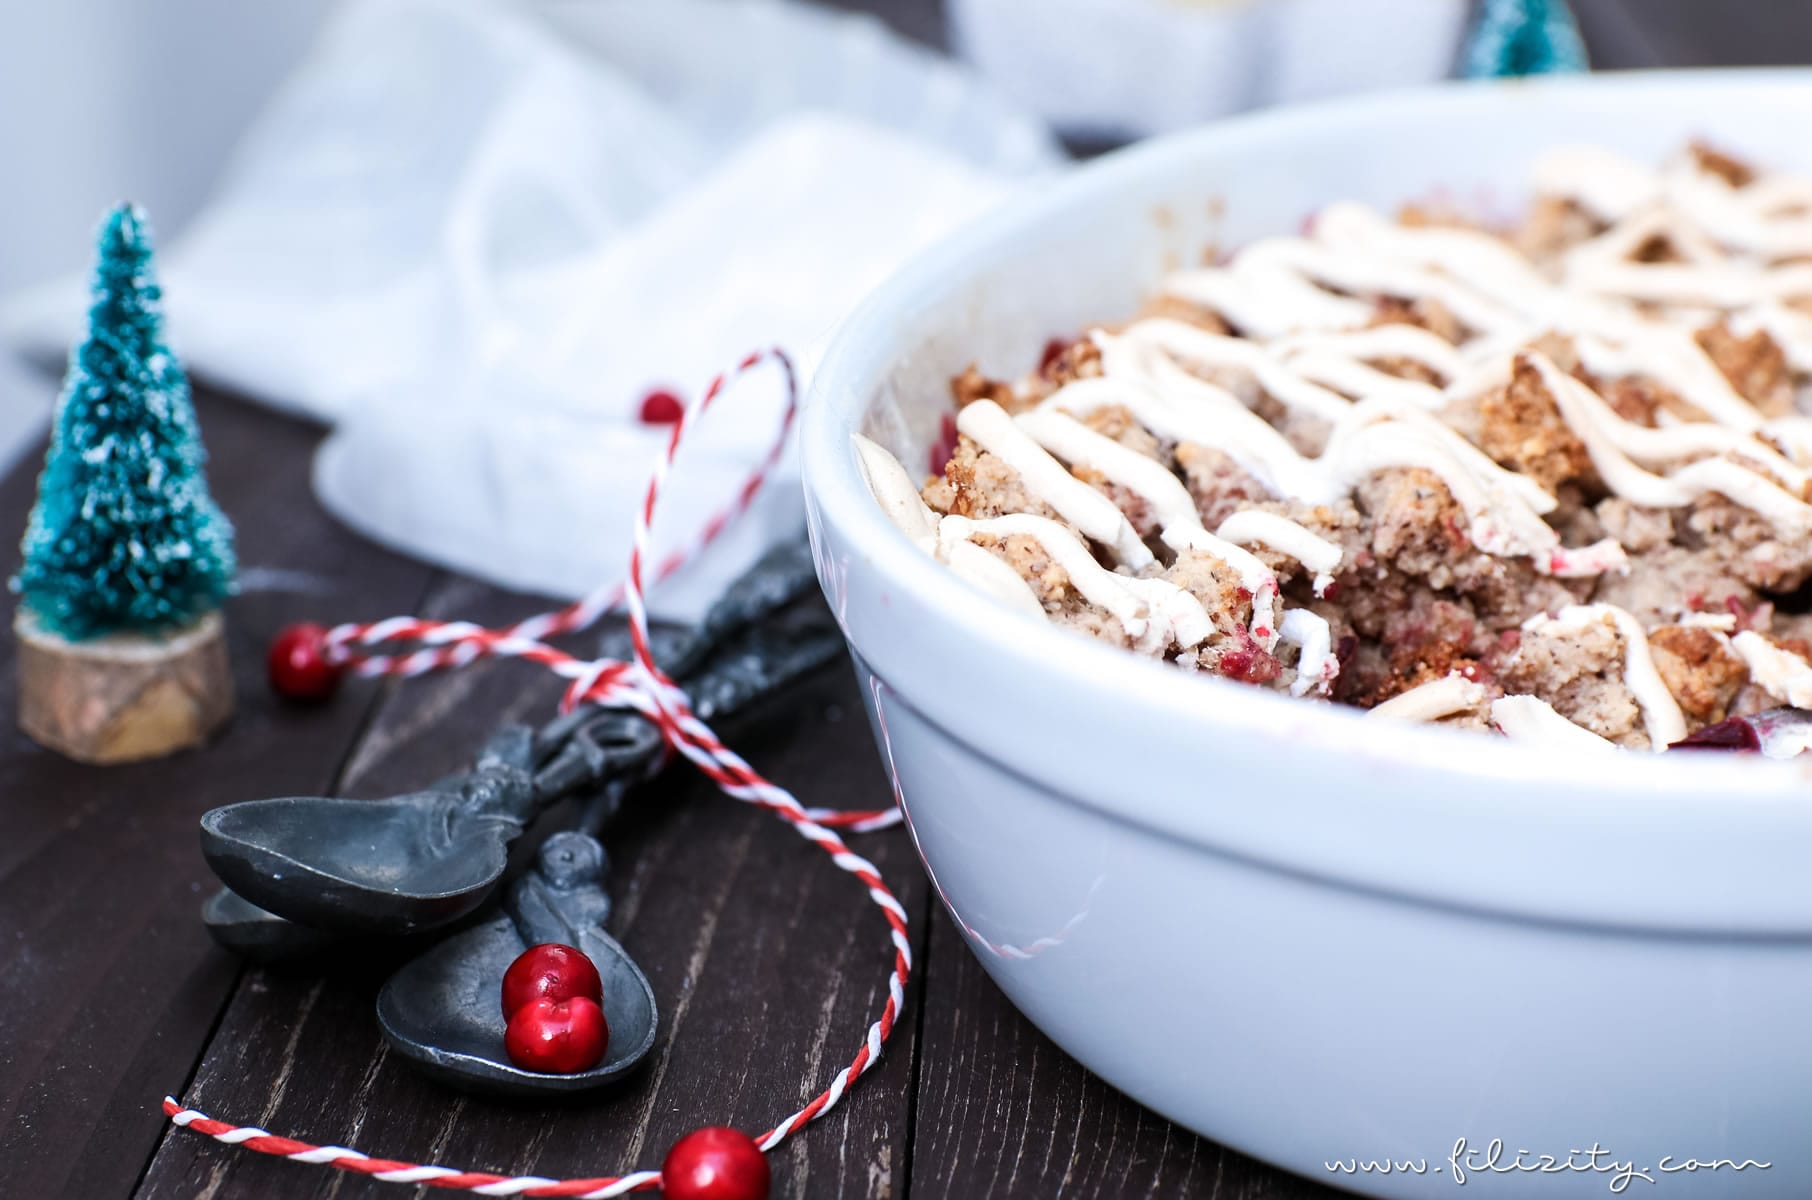 Rezept für Weihnachts-Crumble mit Cranberries und Zimtsterne-Streuseln | Filizity.com | Food-Blog aus dem Rheinland #dessert #weihnachten #zimtsterne #plätzchen